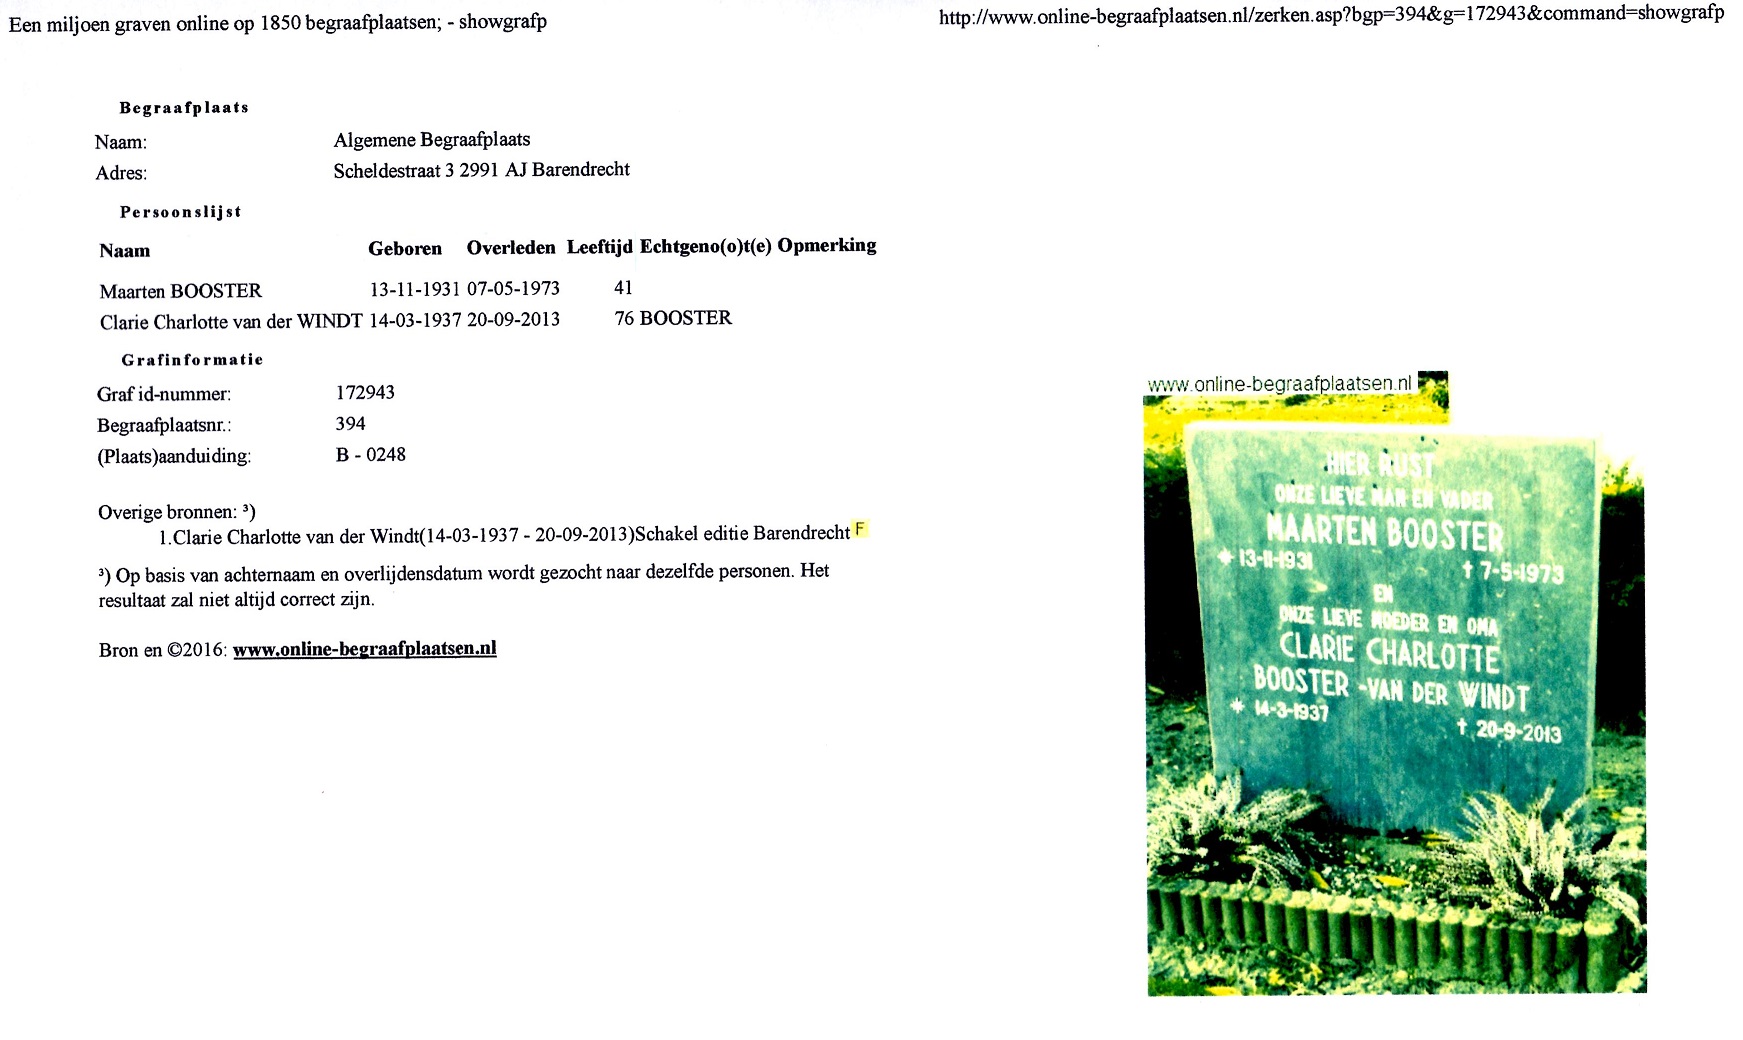 2013-09-20-algemene-begraafplaats-scheldestraat-te-barendrecht